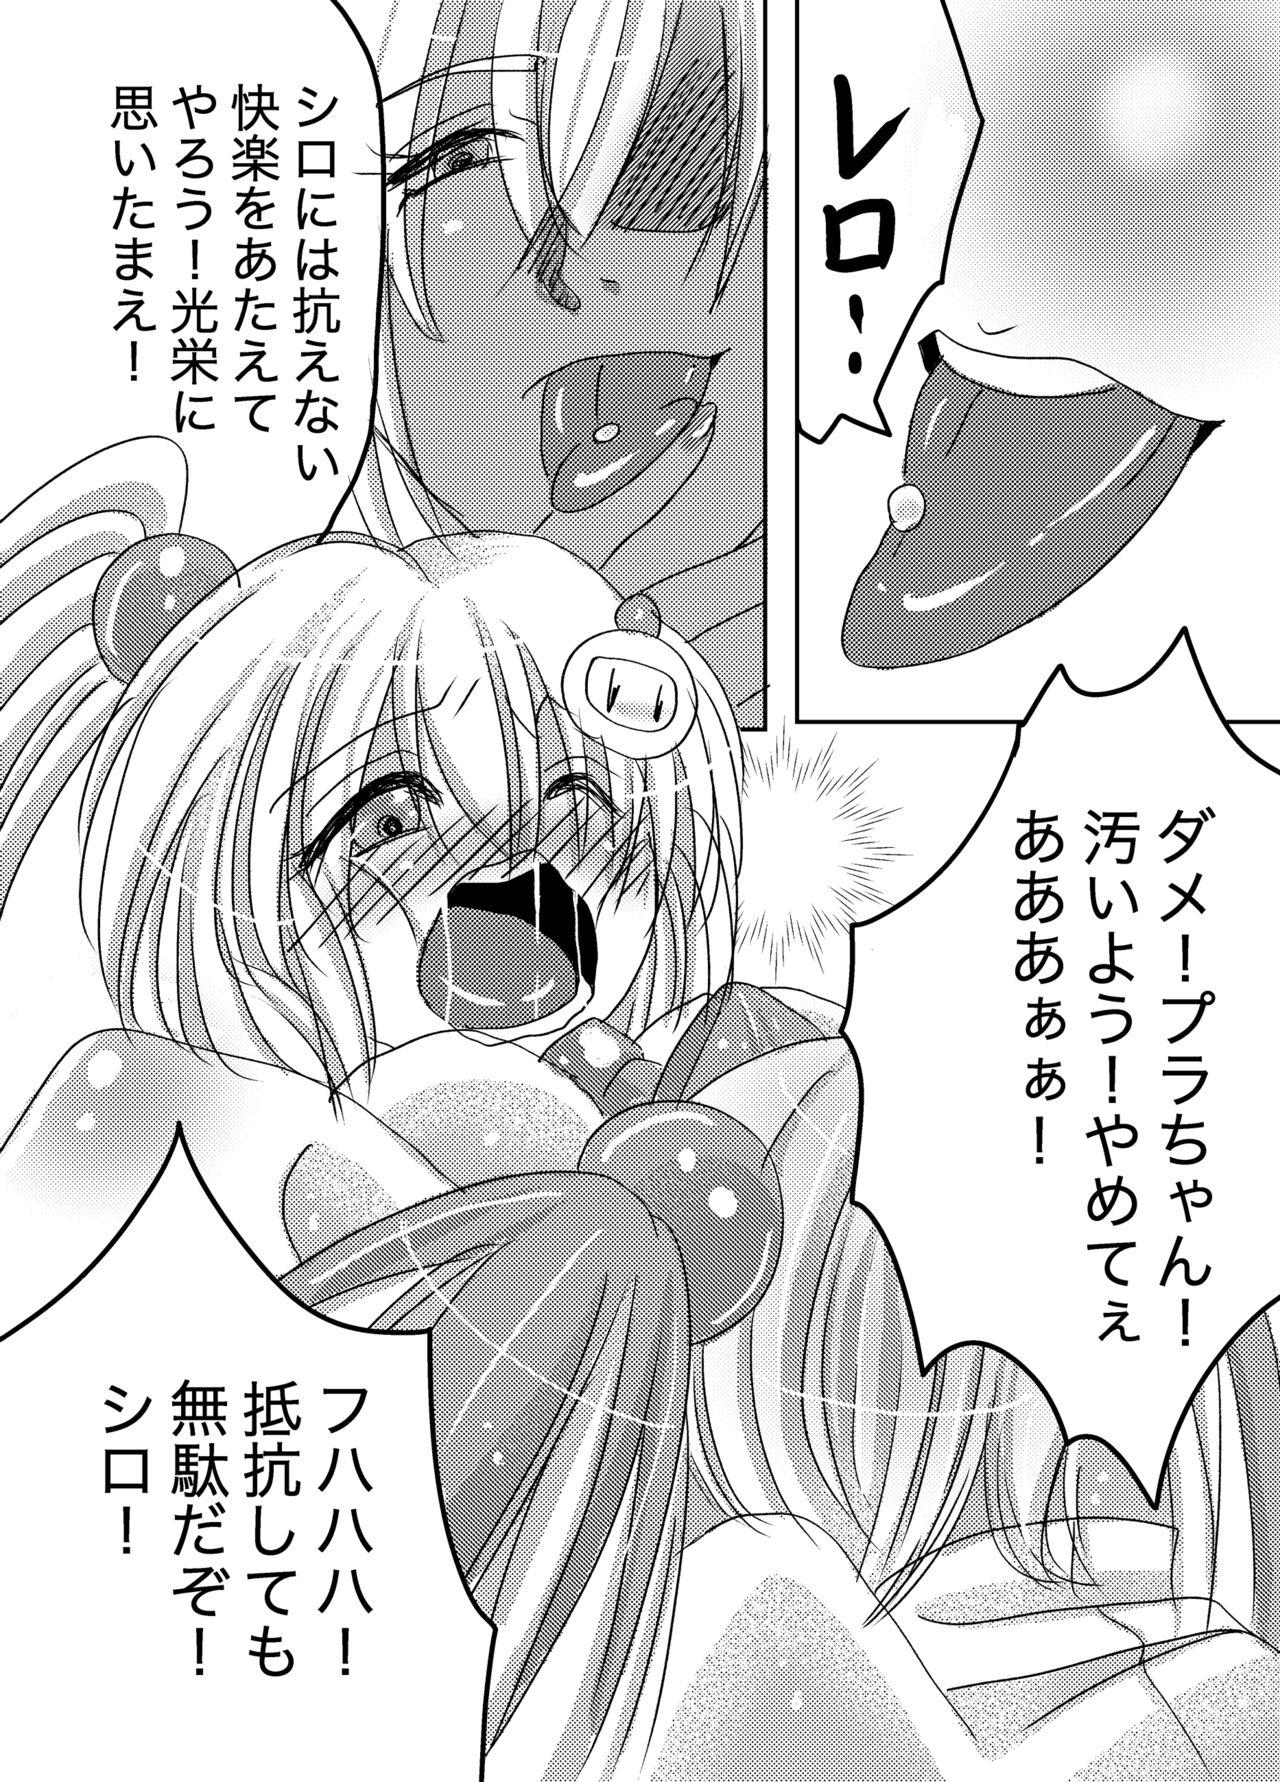 European Galtinum ni Omanko Peropero Sarechau Shiro-chan no Manga - Bomber girl Orgasmus - Page 4